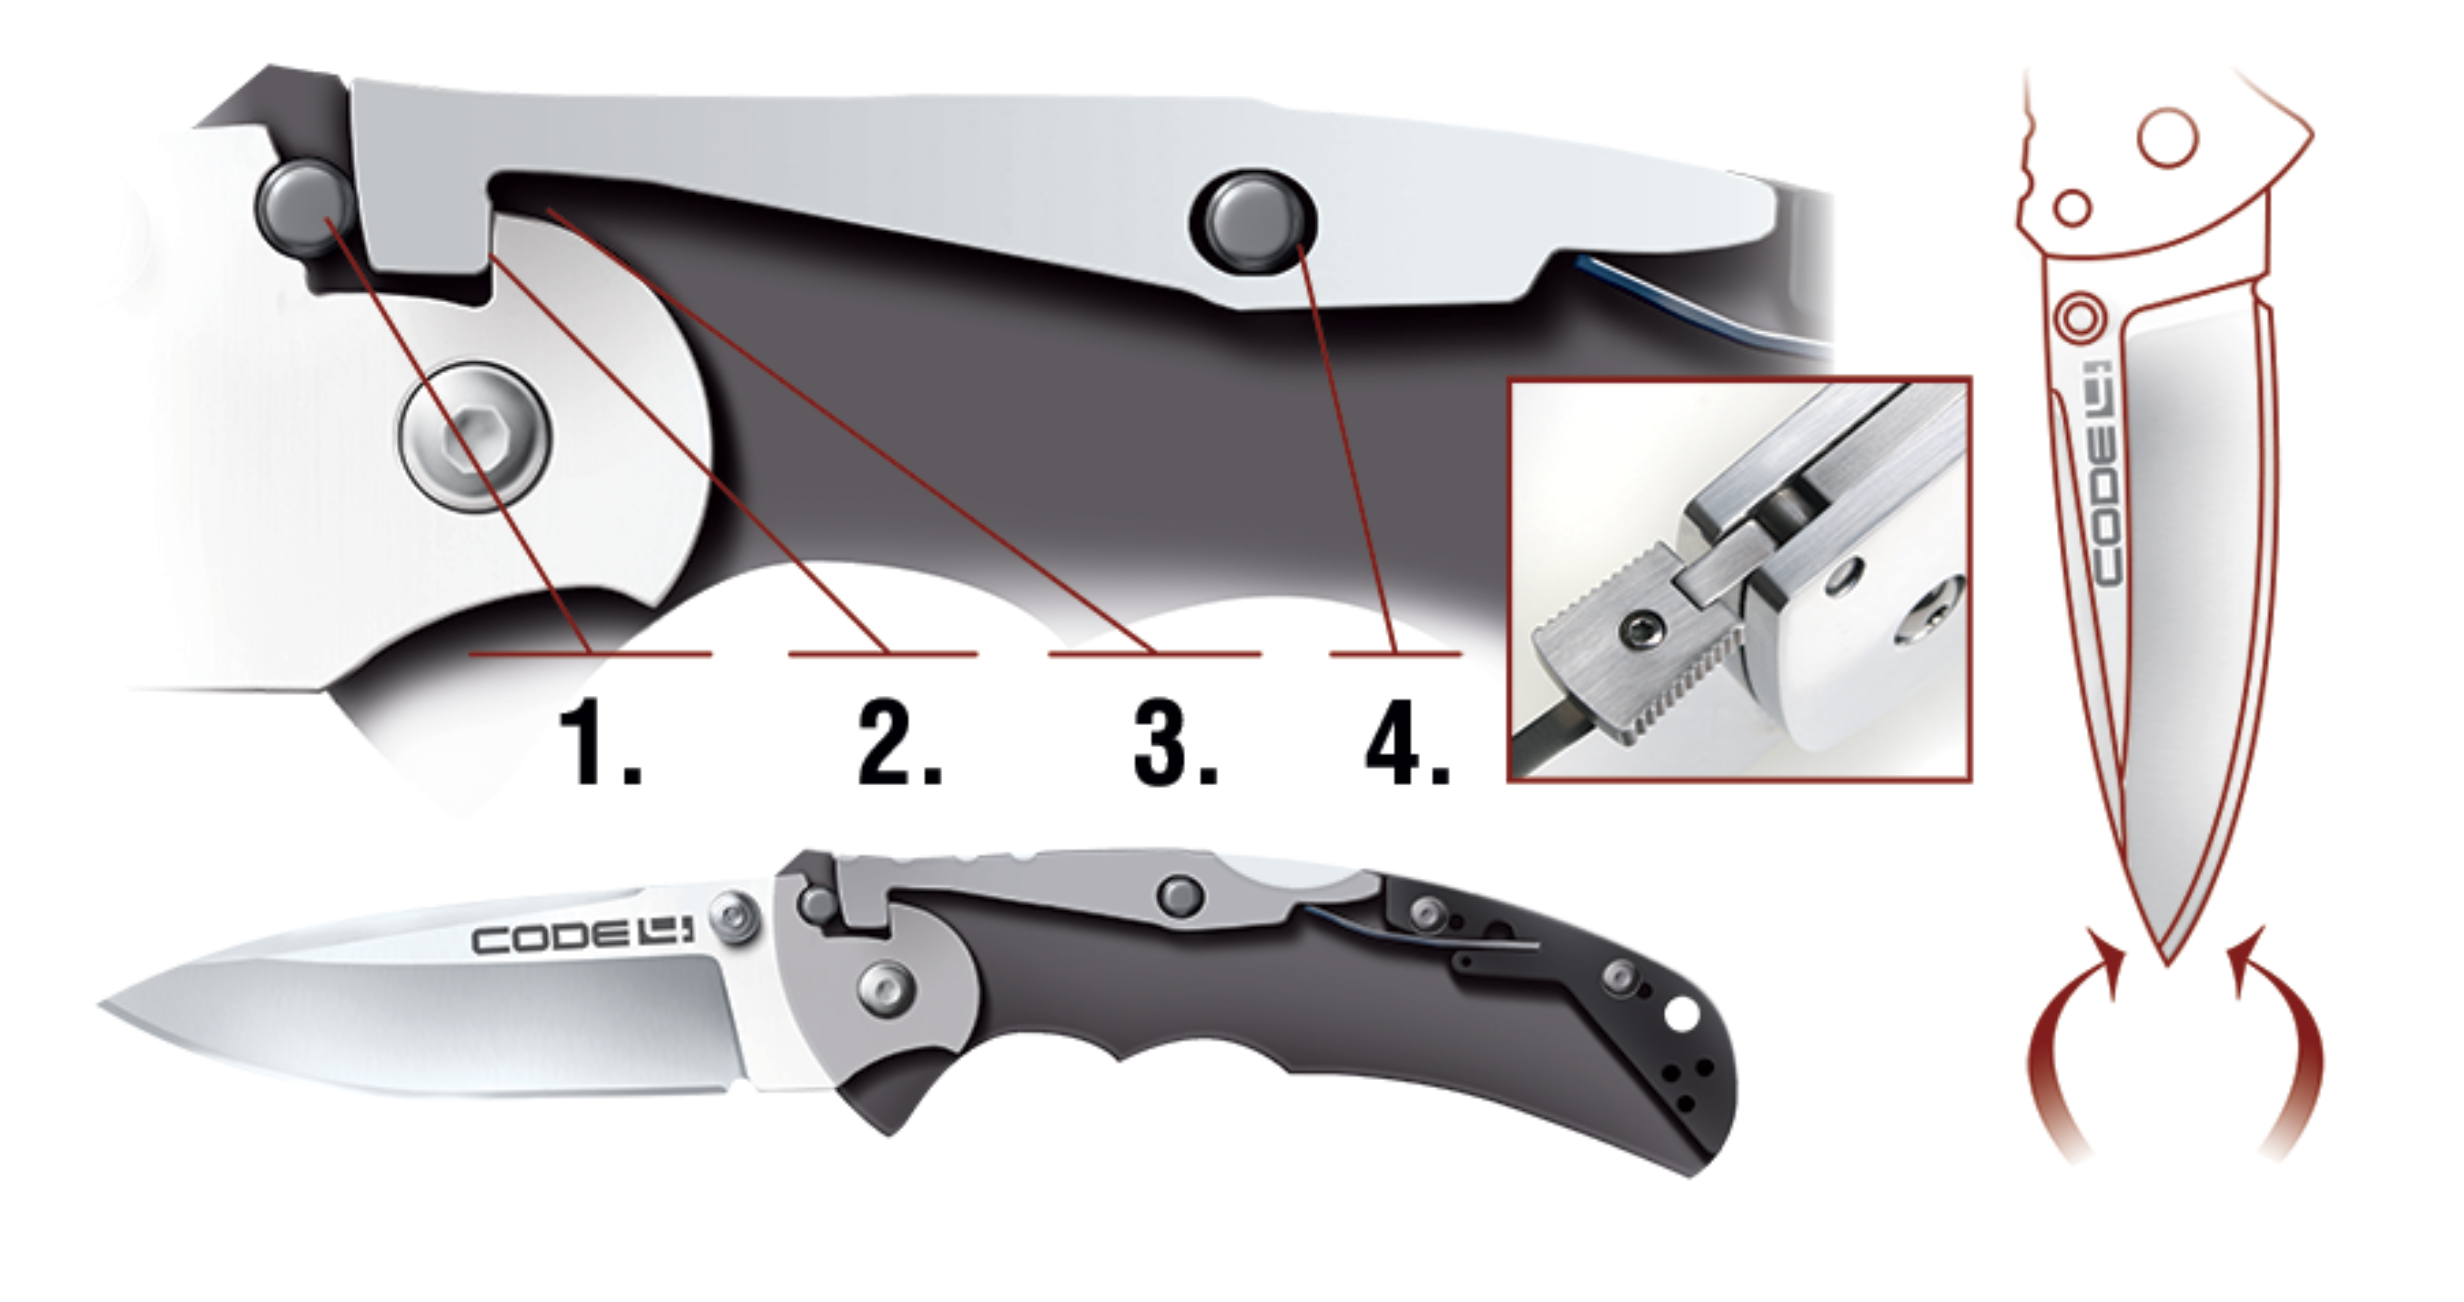 Тычковый нож, чертежи и модели из вороненой стали для самообороны, техника боя, история создания и типы, особенности конструкции